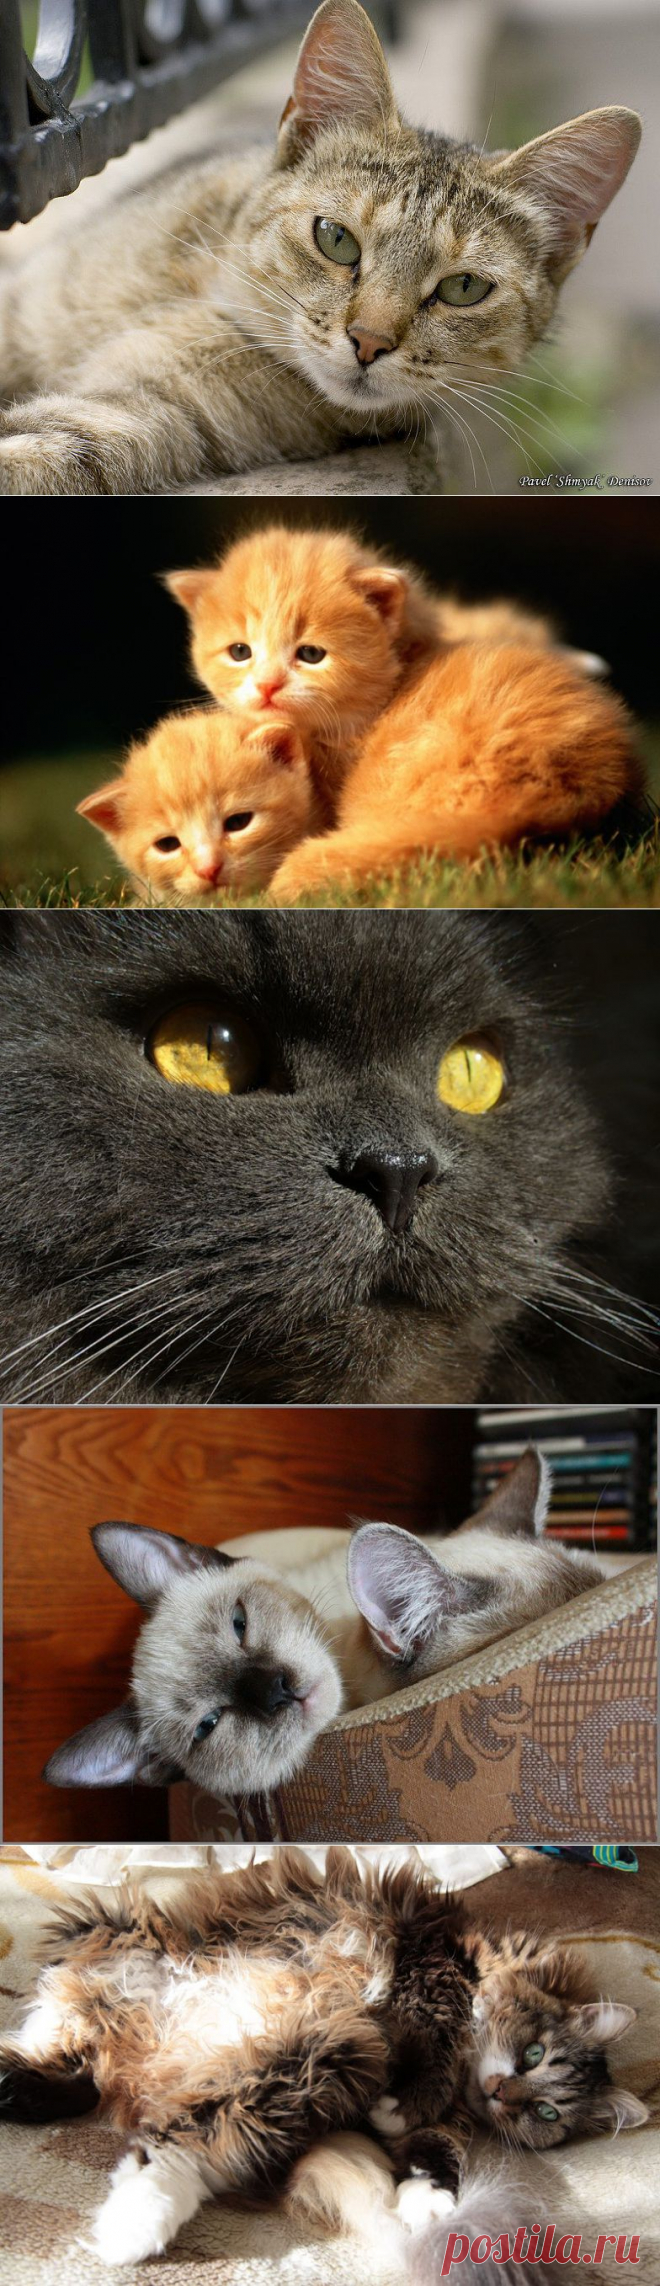 CATFOTO.COM фотографии кошек и котят, дикие кошки, блоги любителей кошек